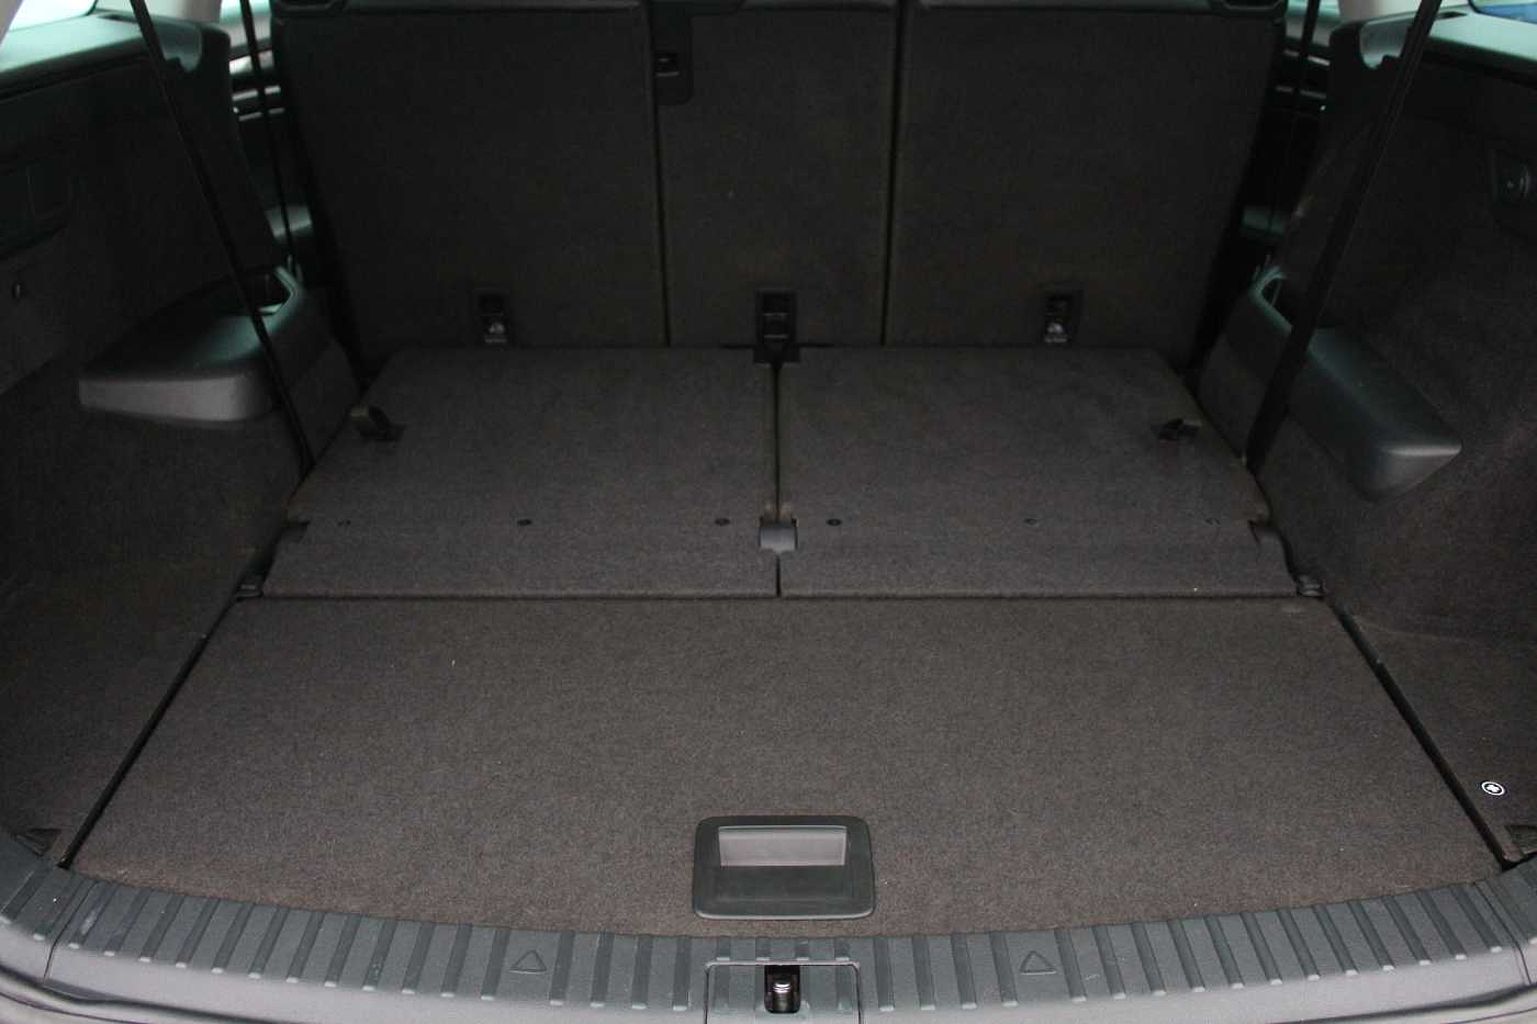 SKODA Kodiaq 2.0TDI (150ps) 4X4 SE L 7 seats DSG SUV